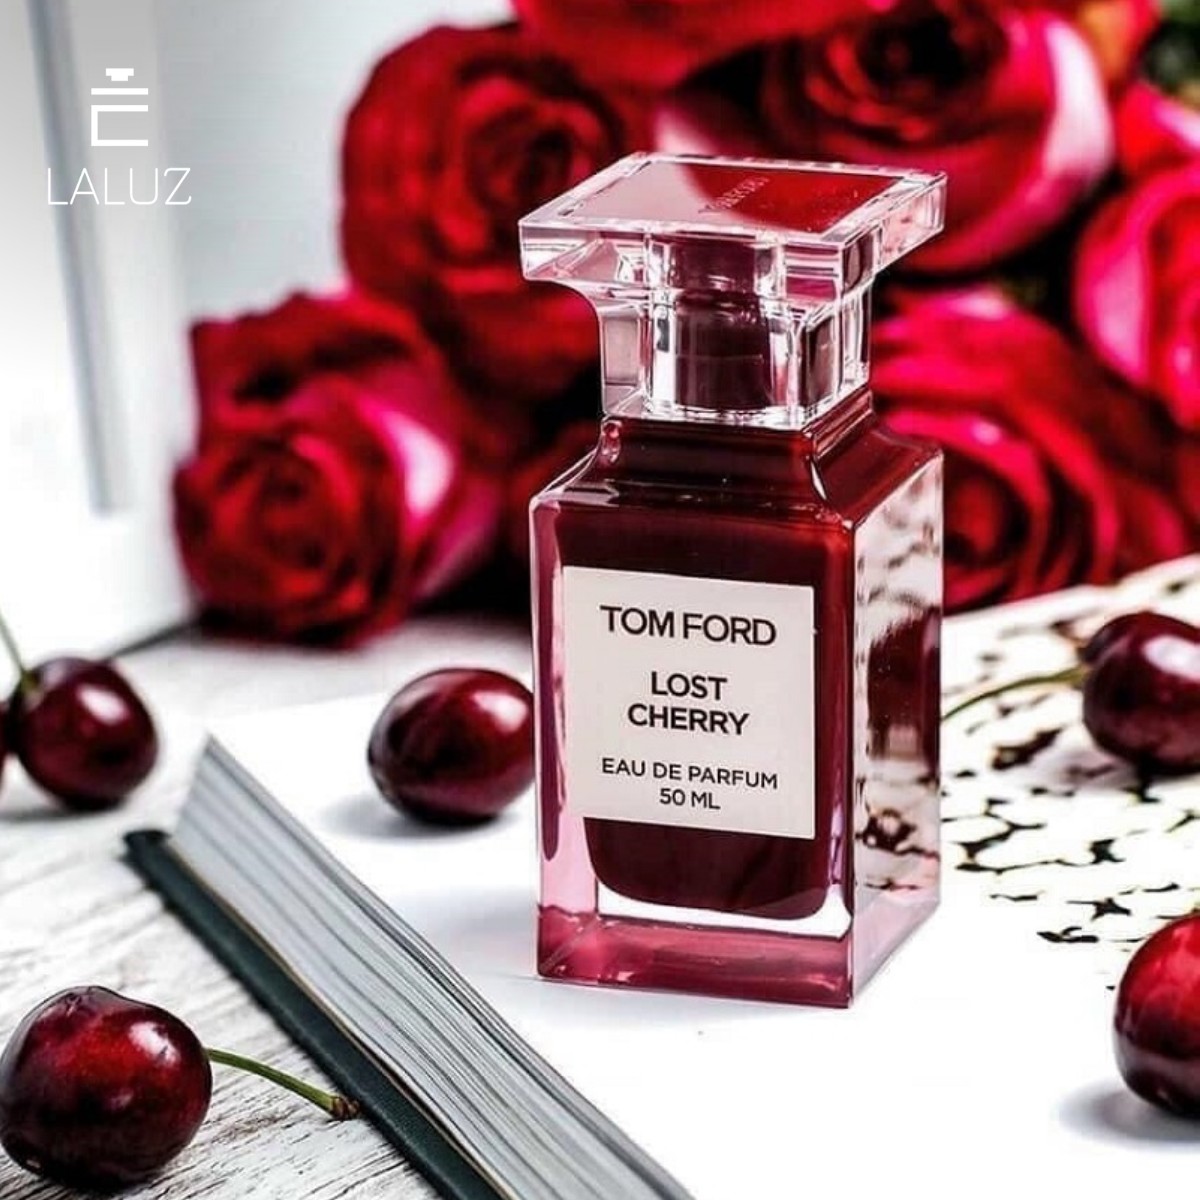 Nước hoa Tom Ford Lost Cherry có mùi hương ngọt ngào, nồng nàn từ trái anh đào chín mọng